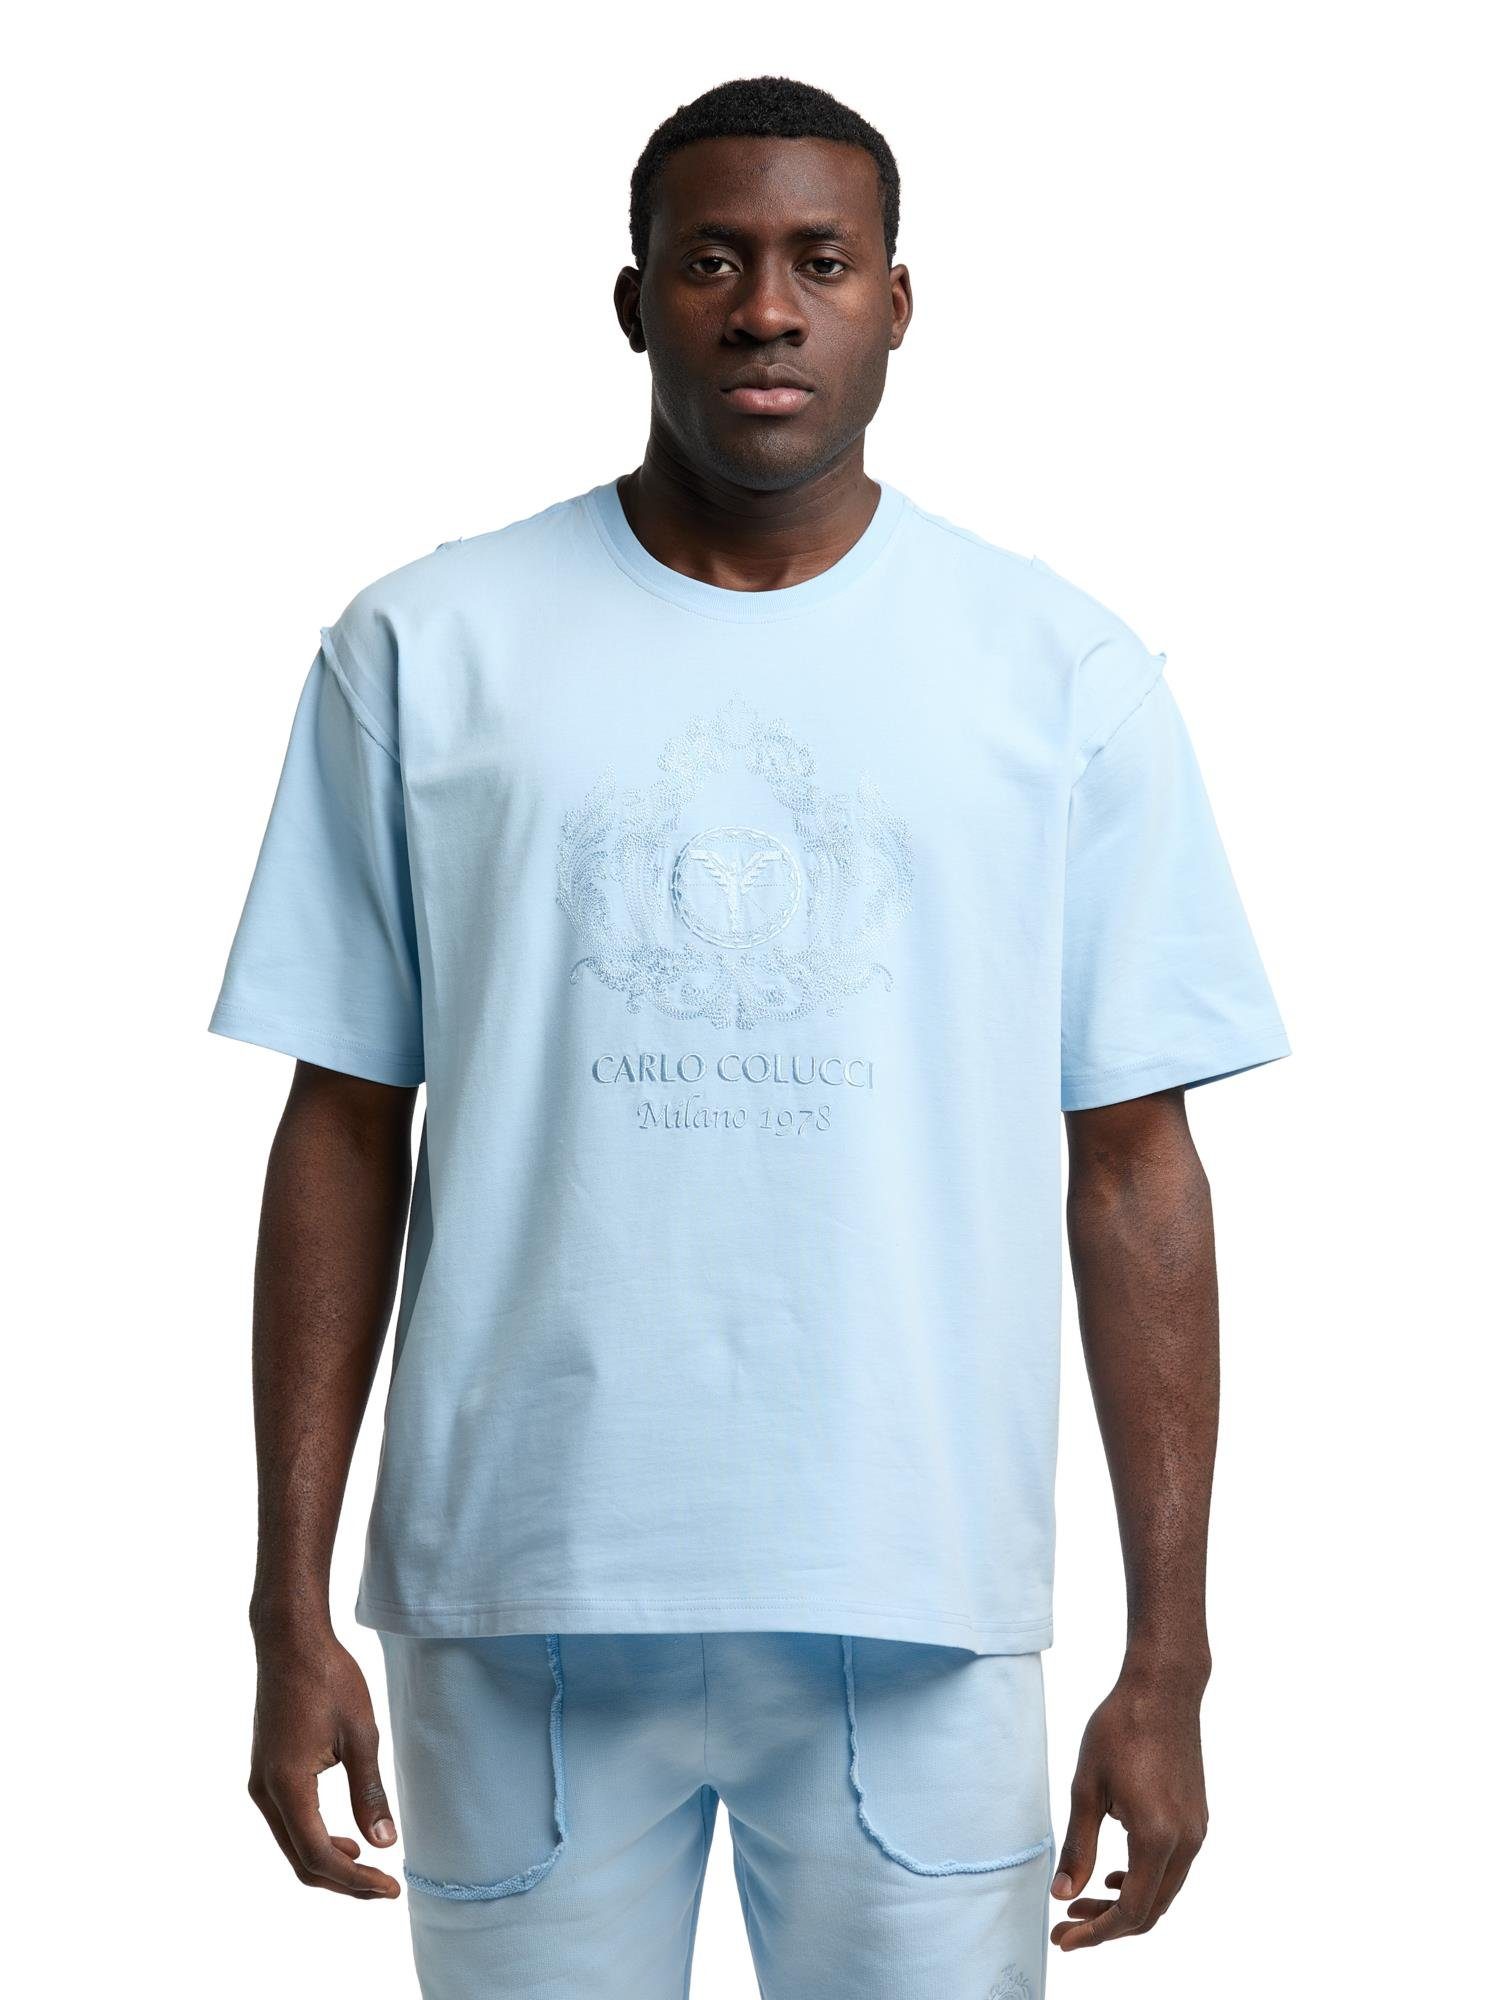 CARLO COLUCCI T-Shirt De Bortoli Blau